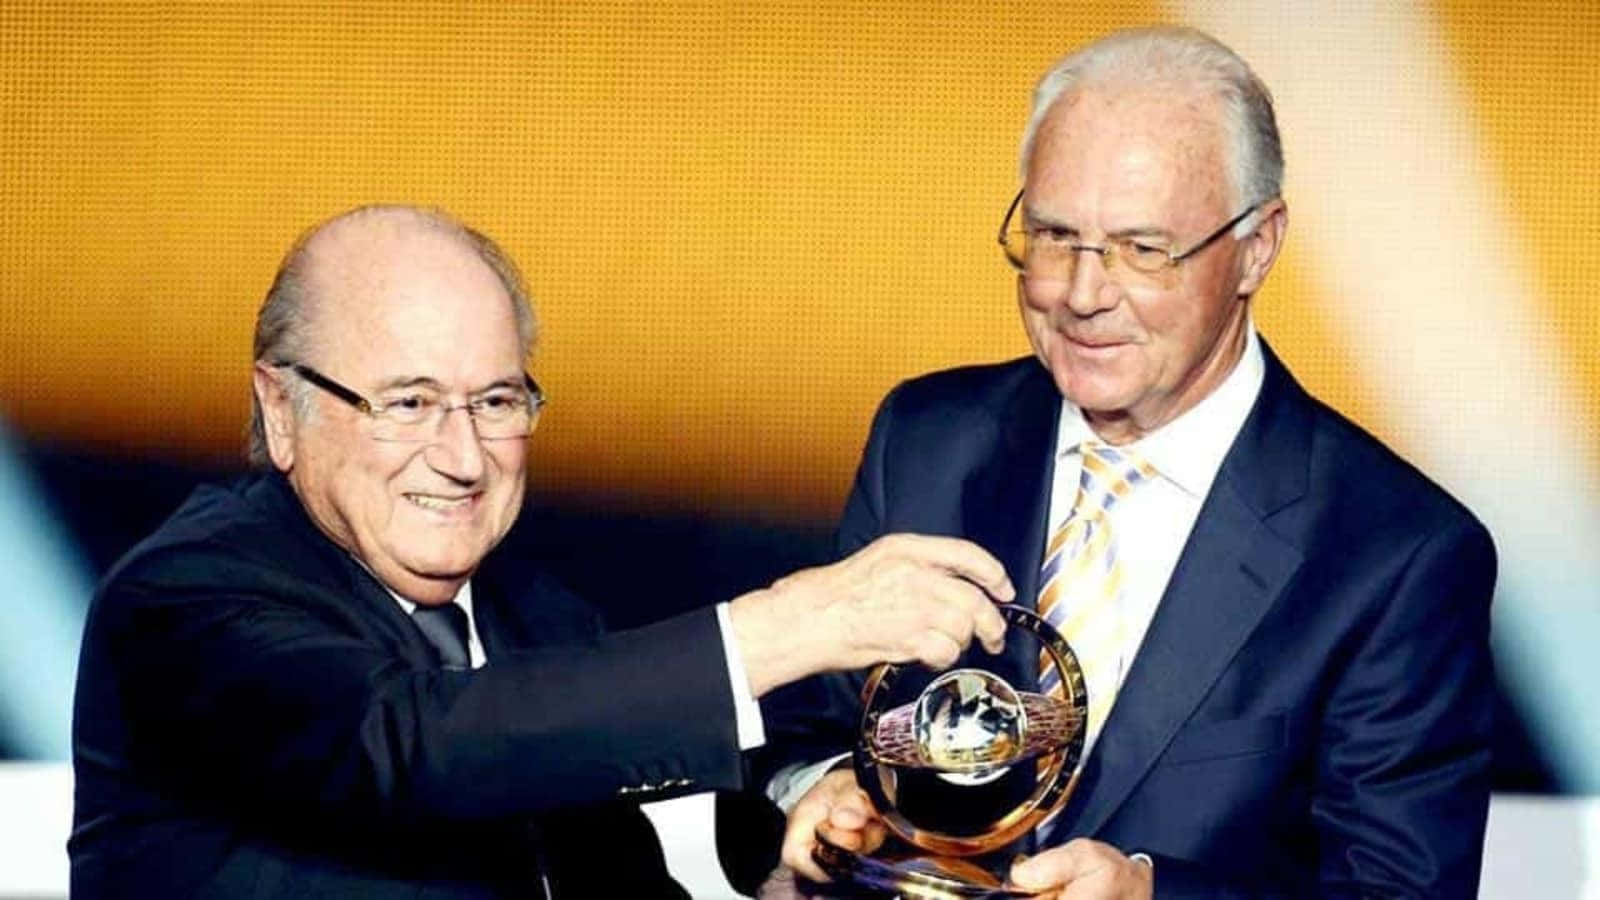 Legendary football figure Franz Beckenbauer at an awards ceremony. Wallpaper